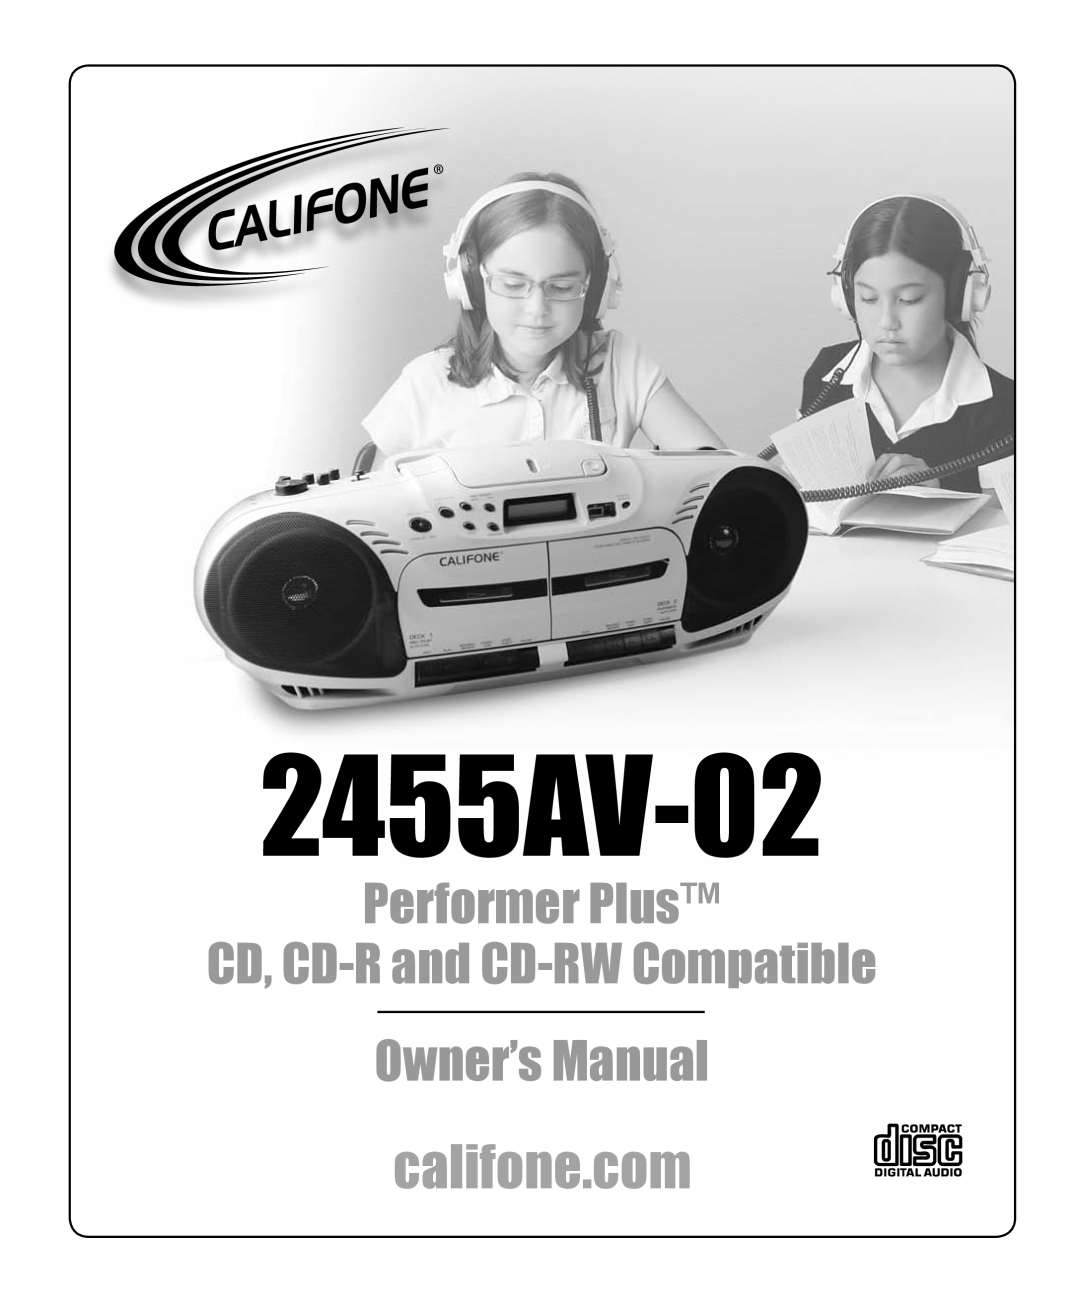 Califone owner manual Chatsworth, CA, Performer Plus 2455AV-02Boombox, Model 2455AV-02, Califone International, Inc 